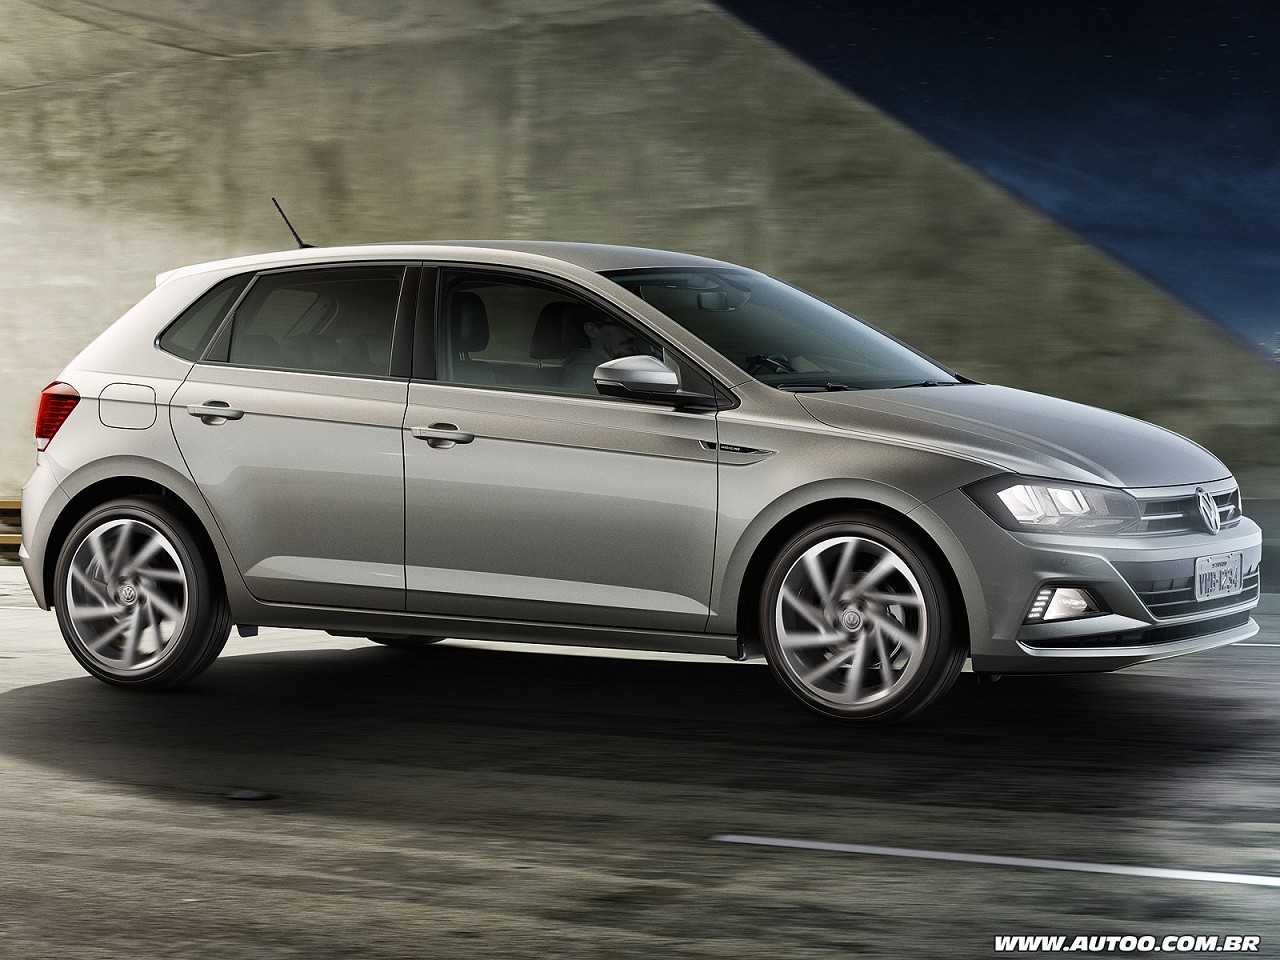 Compra PCD: um Hyundai Creta 2018 ou um VW Polo Comfortline completo?